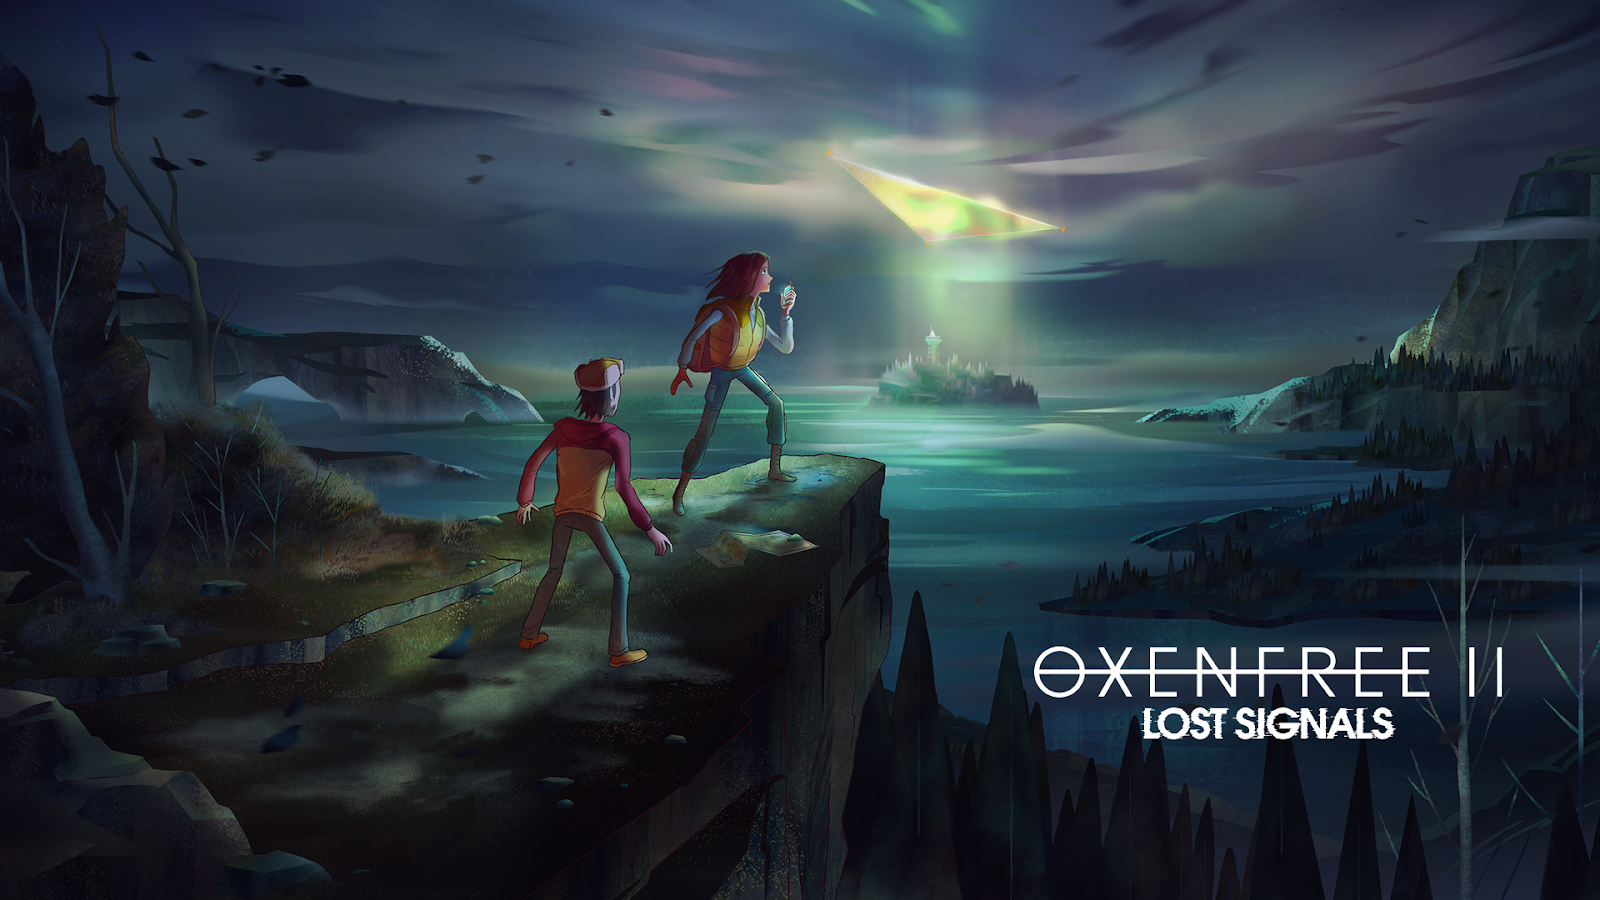 เกม OXENFREE BY KUBET